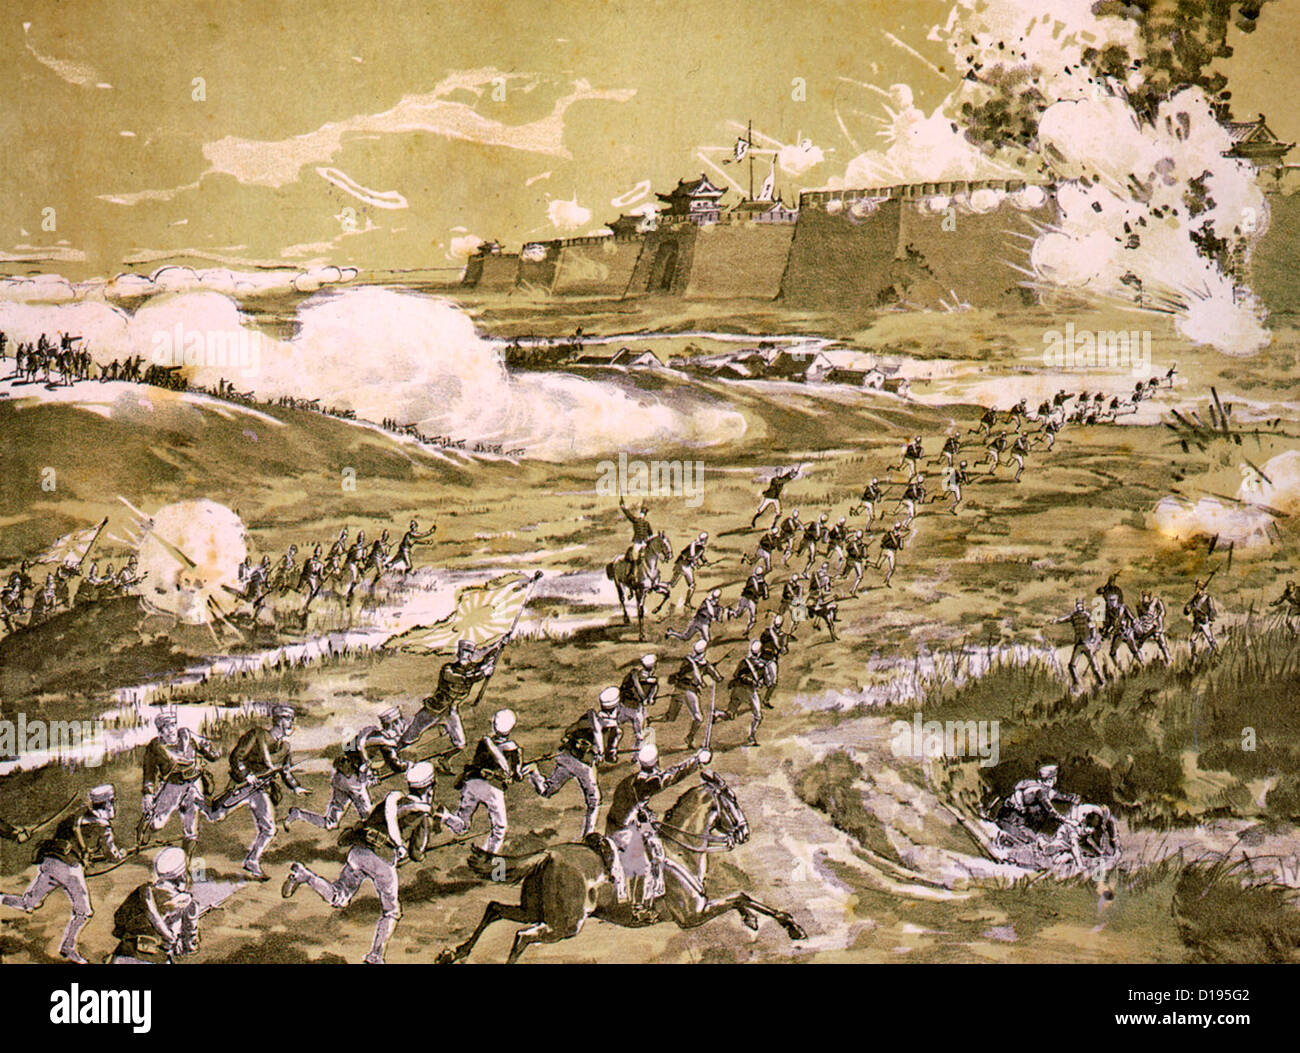 El 11º regimiento de infantería de lanzar una ofensiva general en Tientsin, China escena de batalla de la Rebelión Boxer. 1900 Foto de stock